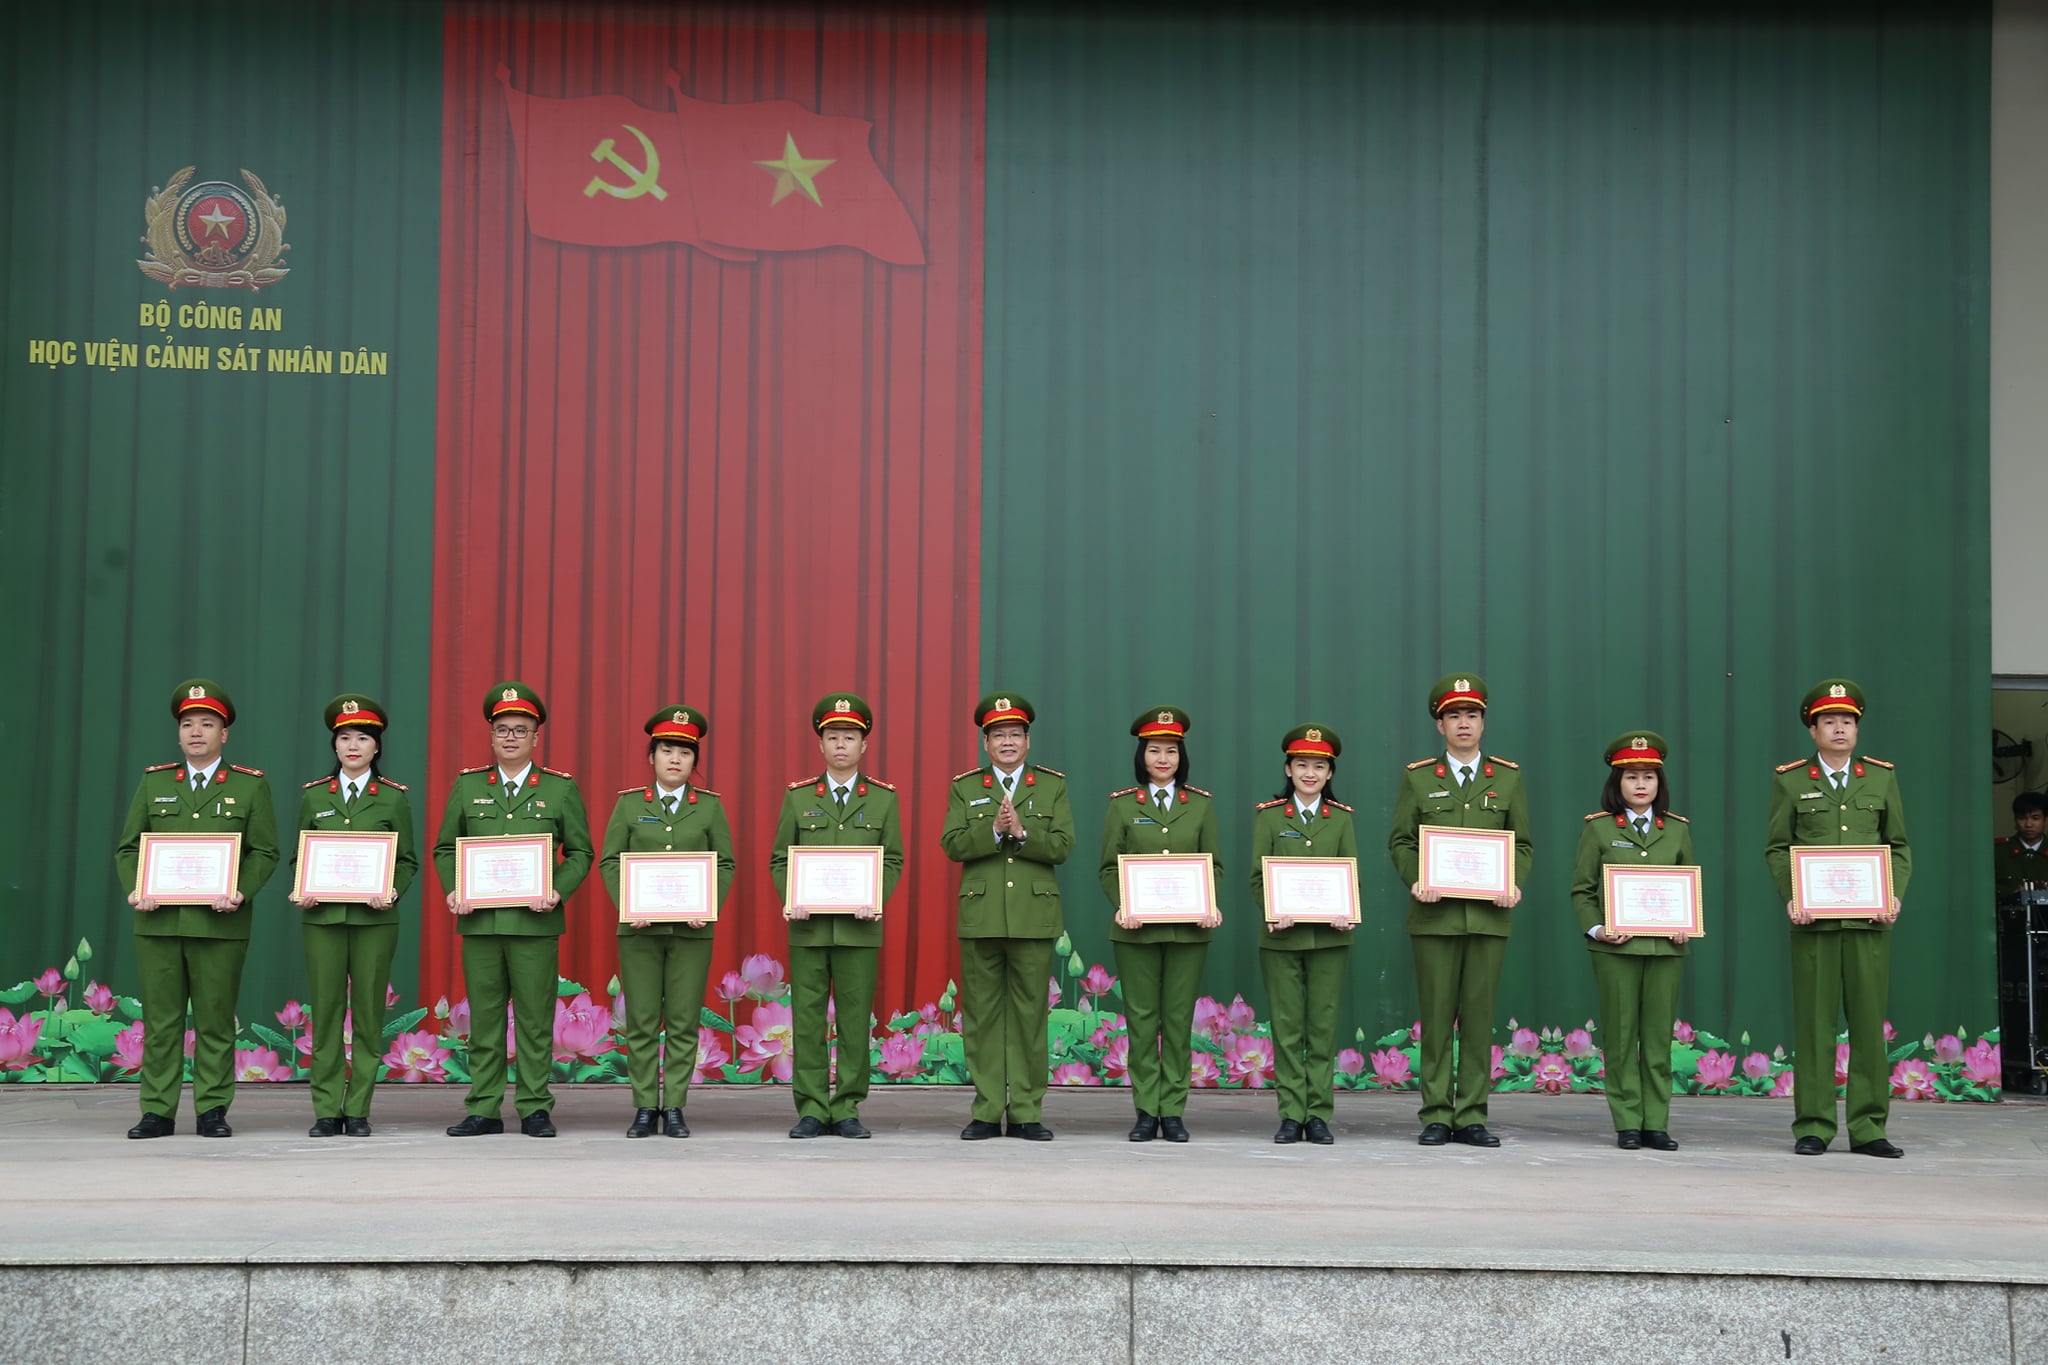 Đại tá, PGS.TS Trần Thành Hưng, Phó Giám đốc Học viện trao Giấy khen cho các cá nhân được vinh danh “Gương mặt tiêu biểu xuất sắc” năm học 2019 - 2020